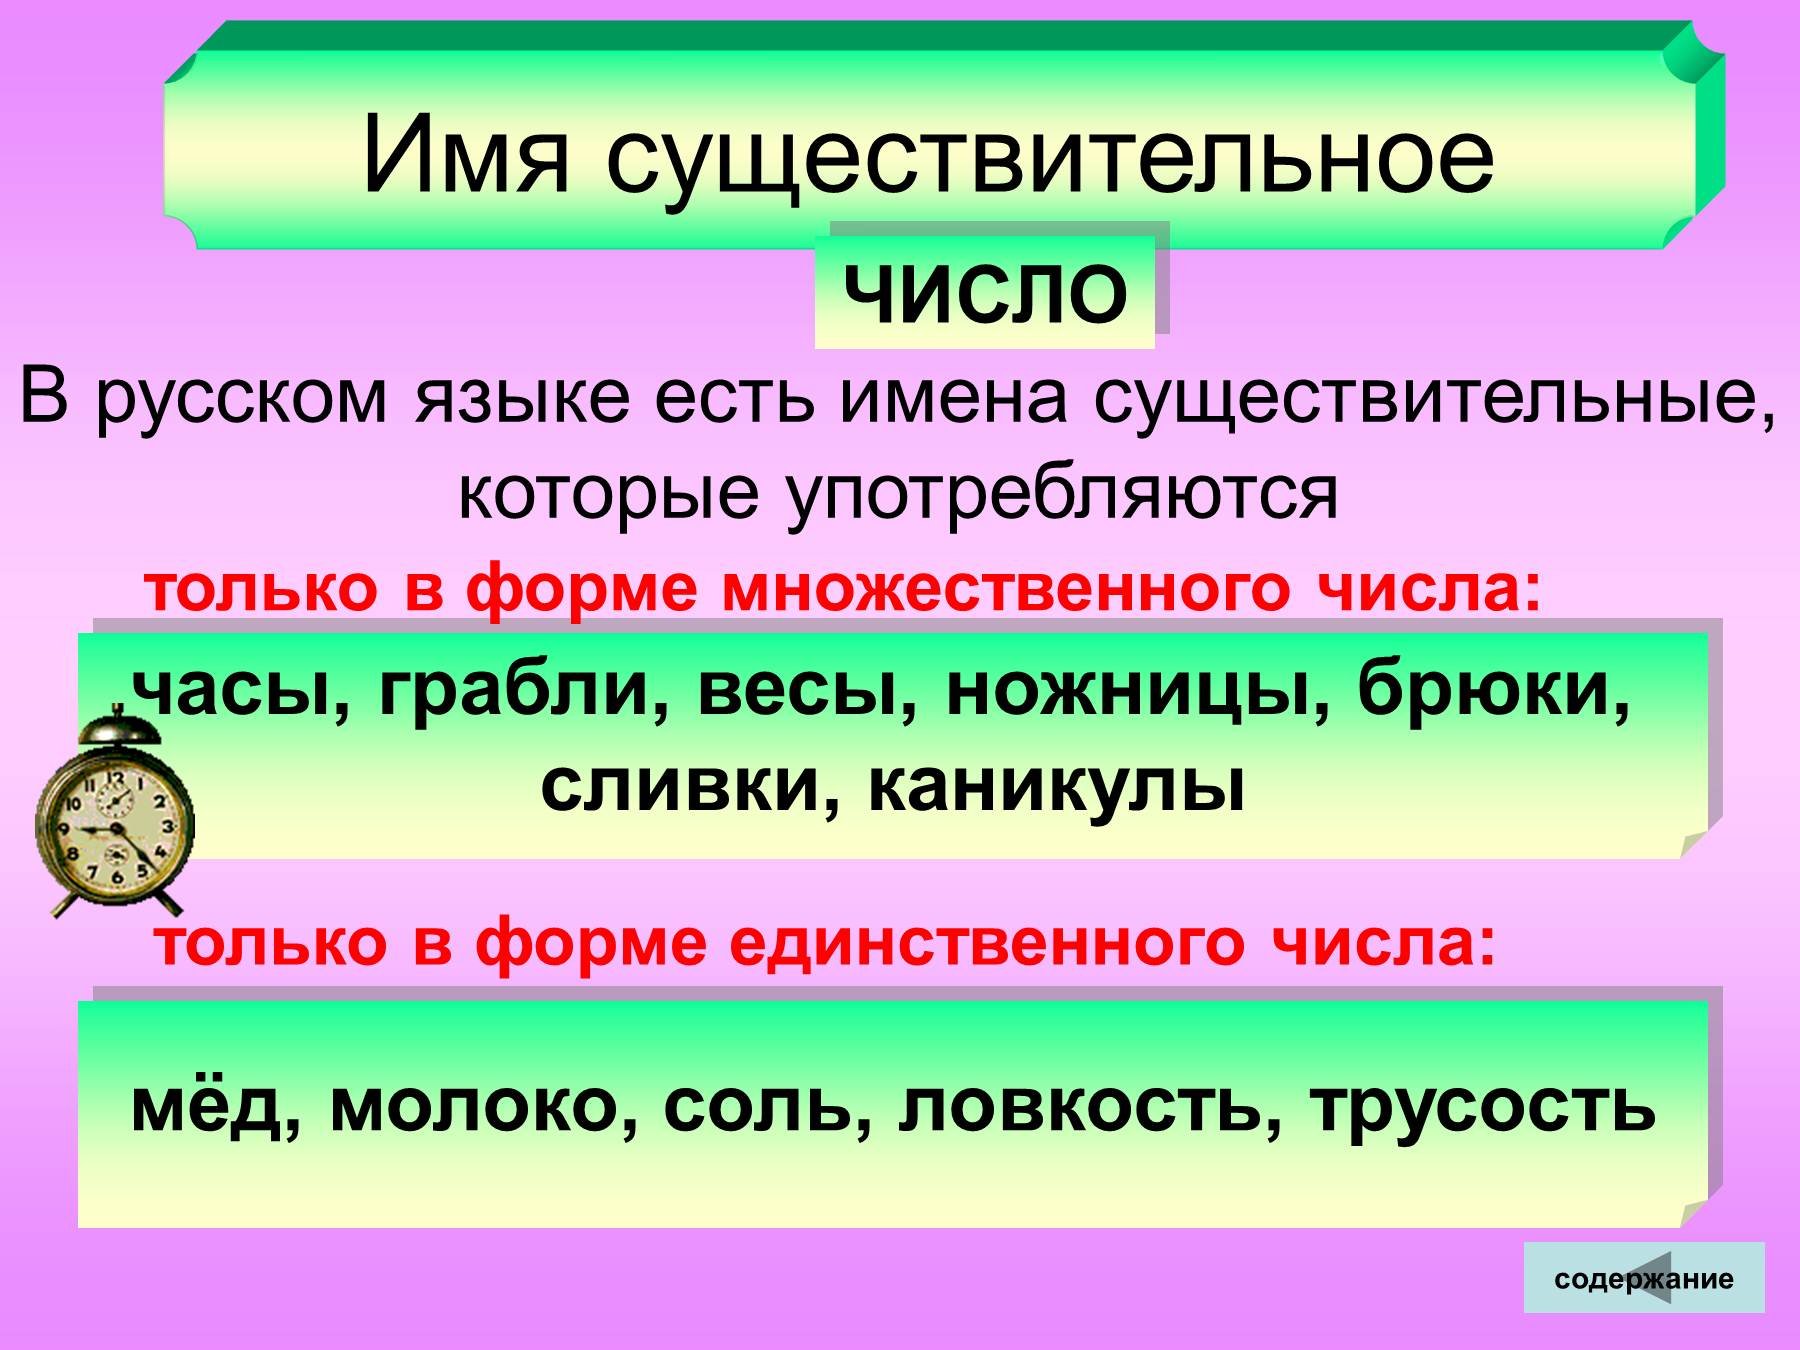 Рубить существительное. Чимслоимен существительных. Число имен существительных. Имена существительные единственного и множественного числа. Числа имен существительных в русском языке.